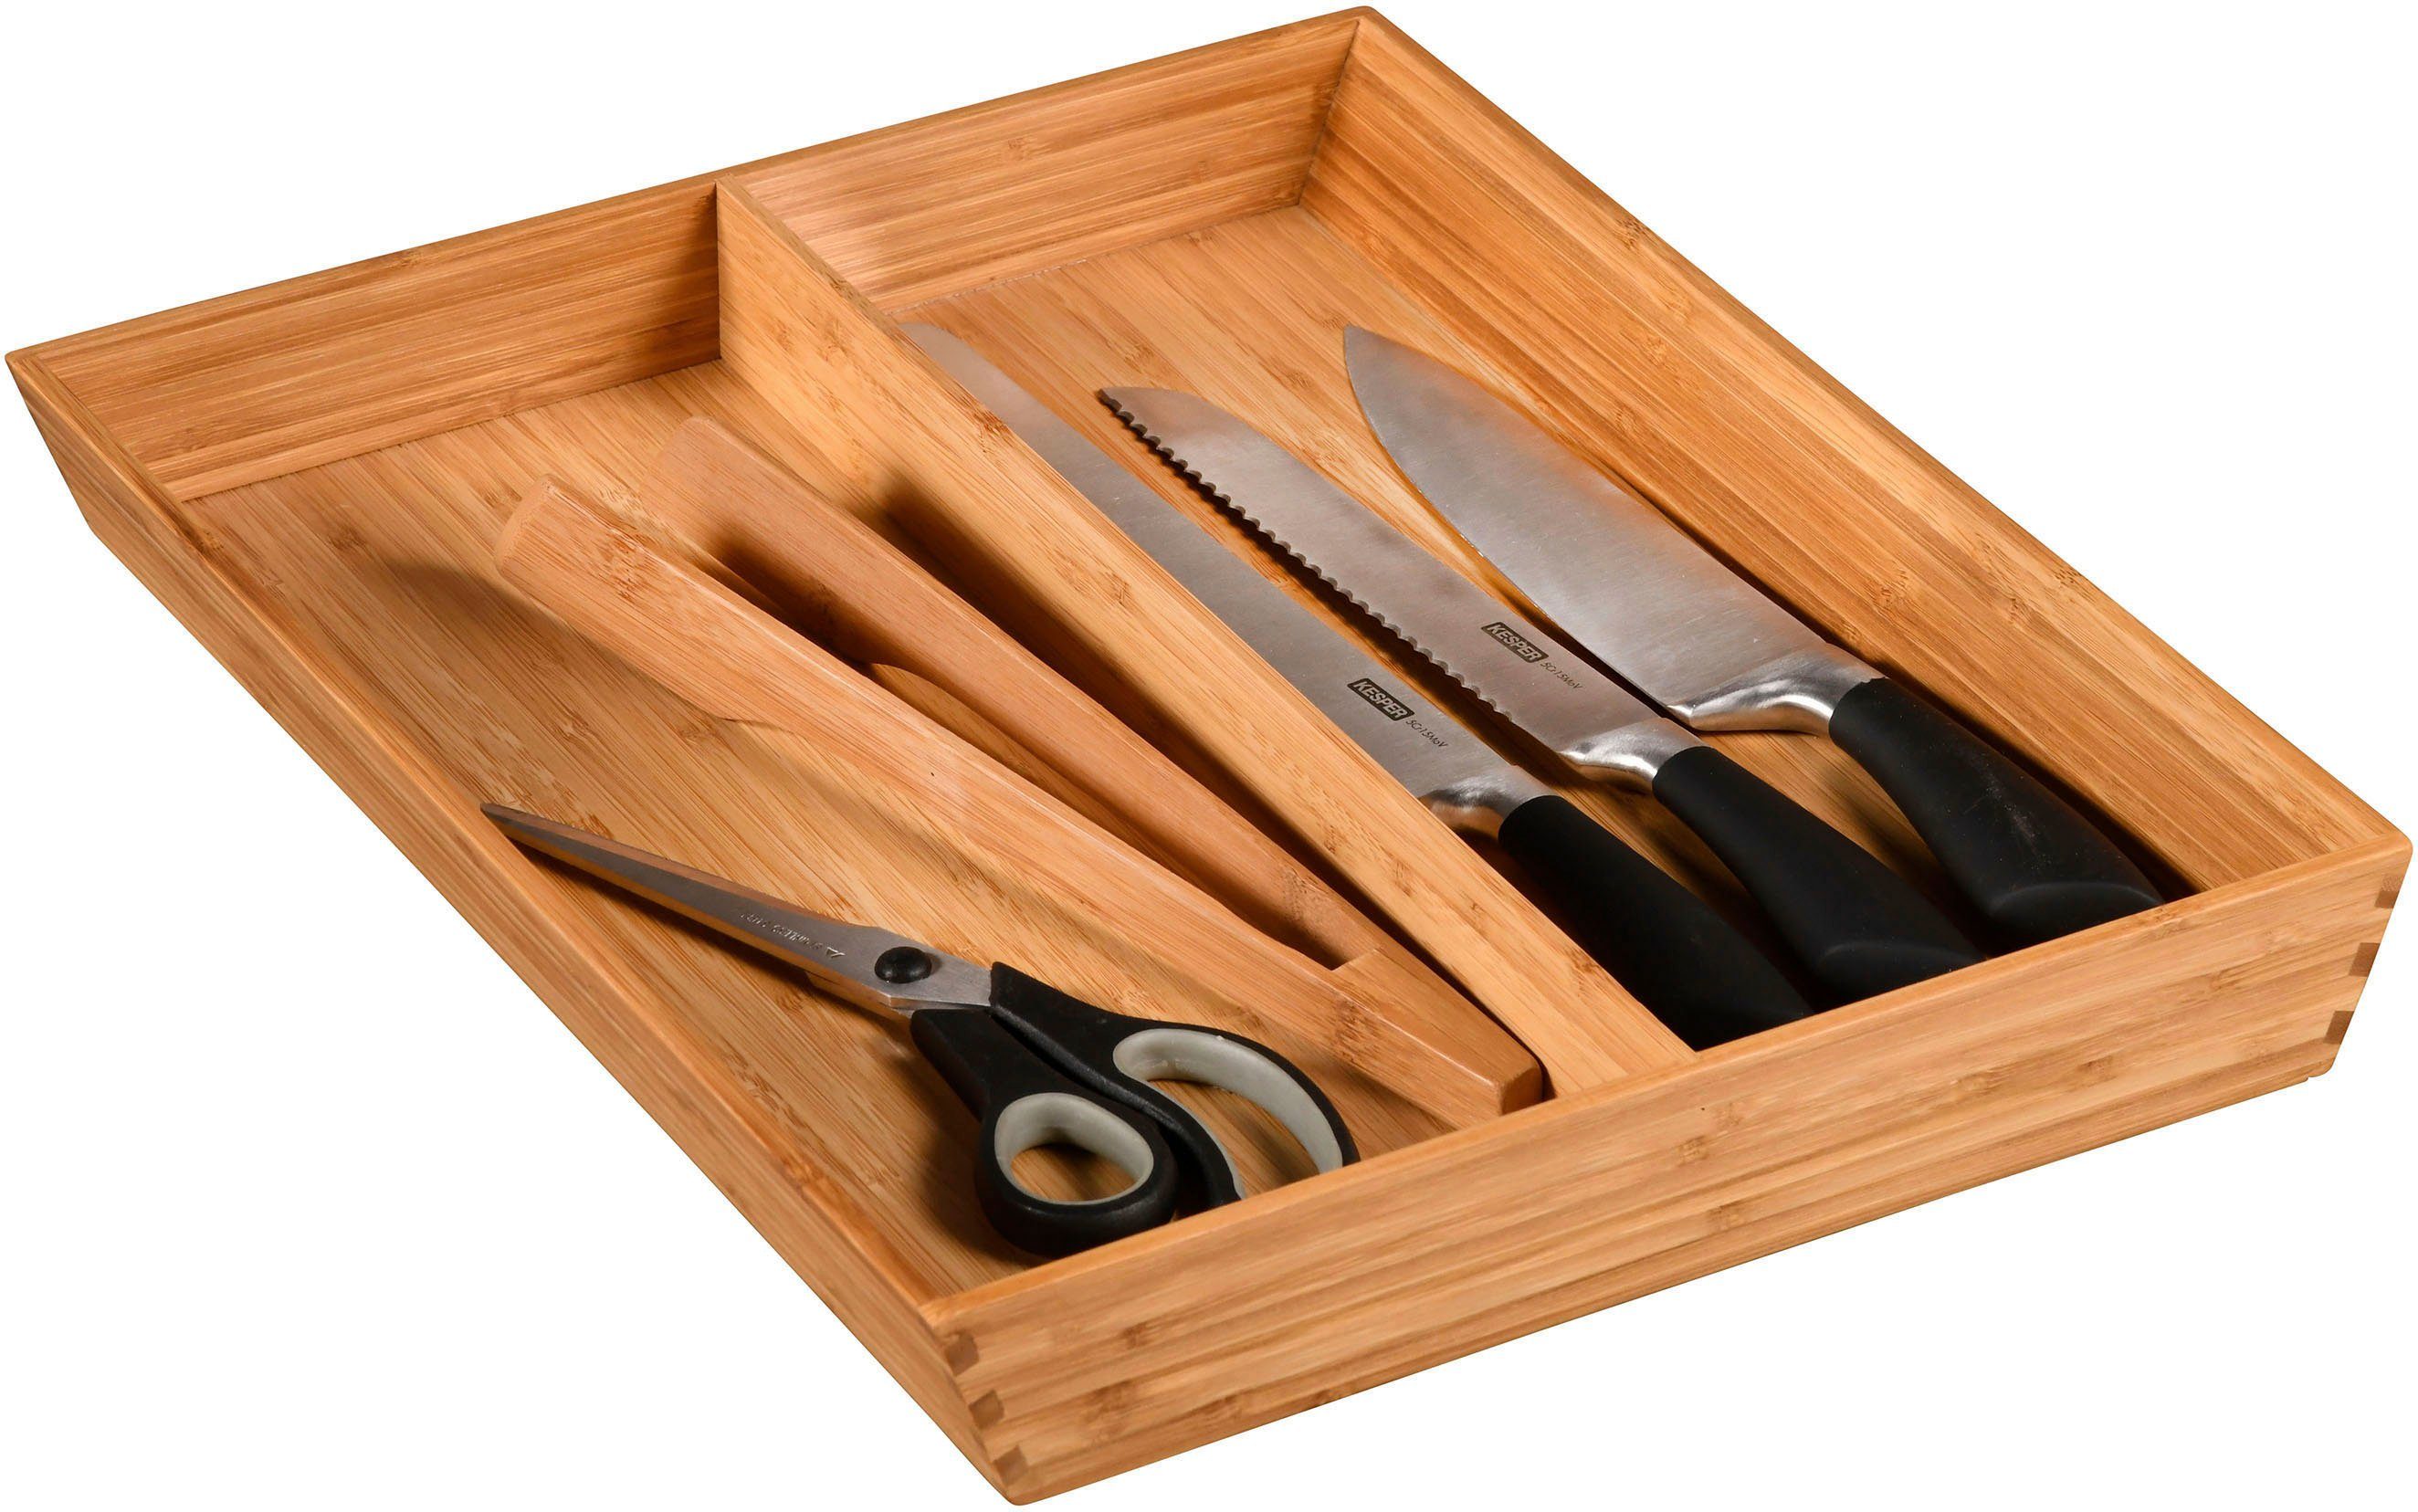 KESPER for kitchen & home Besteckkasten, aus 100% FSC-zertifiziertem Bambus,  2 Fächer | Servierplatten